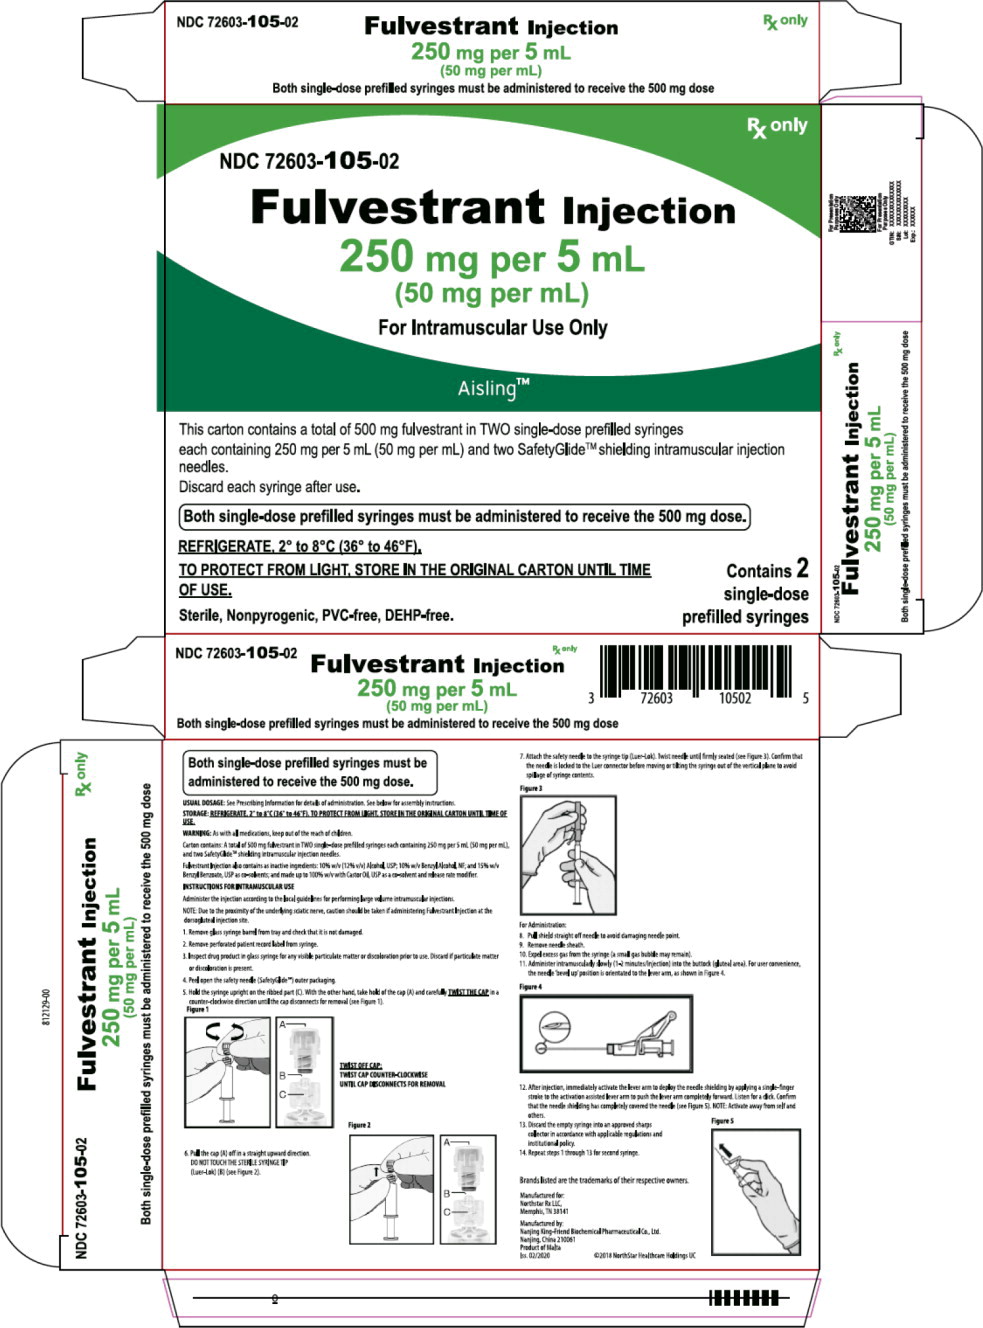 Principal Display Panel – Fulvestrant Injection, 250 mg per 5 mL (50 mg per mL) Carton